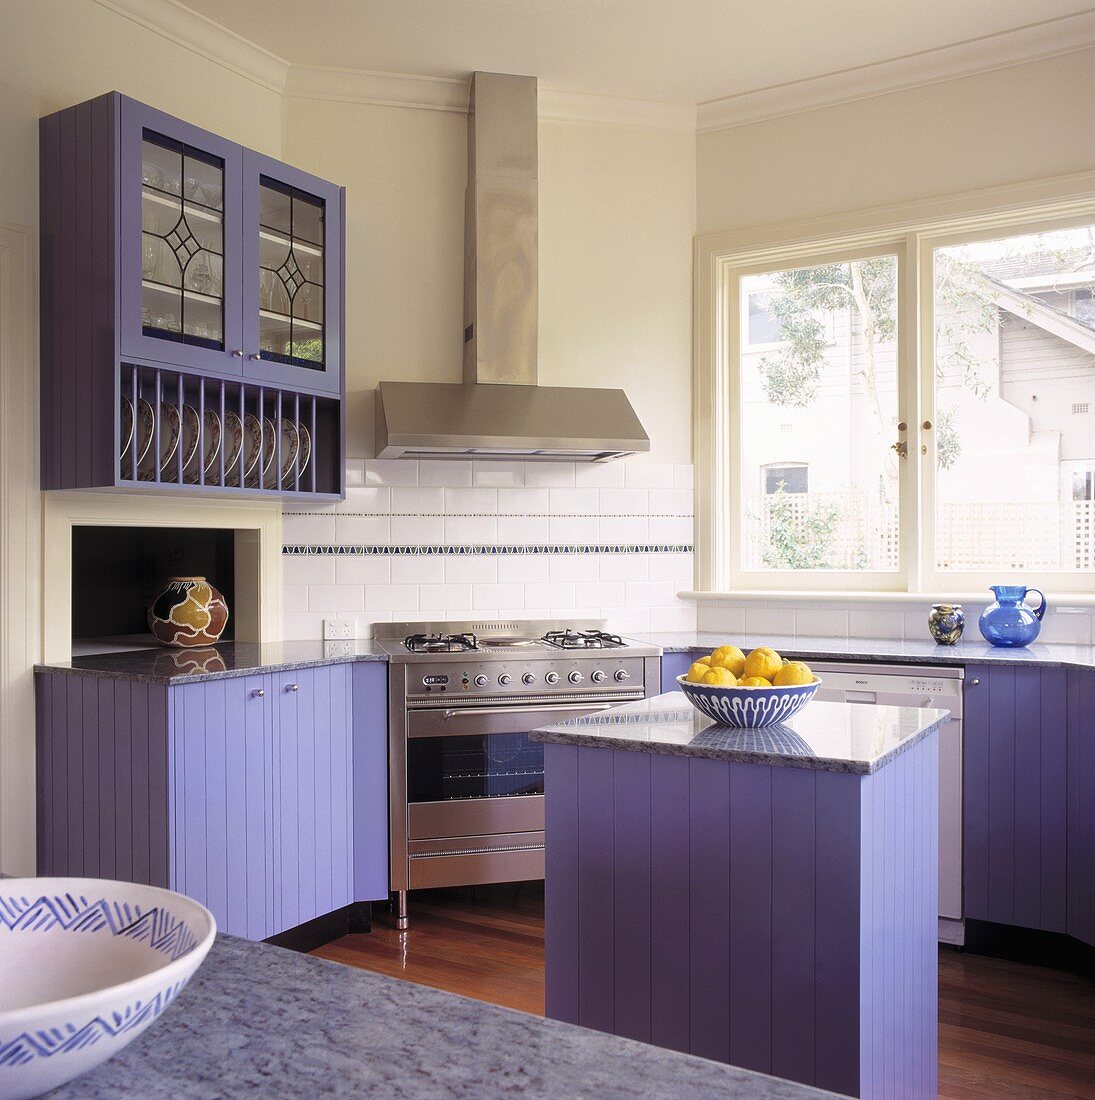 Eine kleine Küche mit modernen Arbeitsgeräten und violetten Schränken, die zu den gelben Zitronen kontrastieren